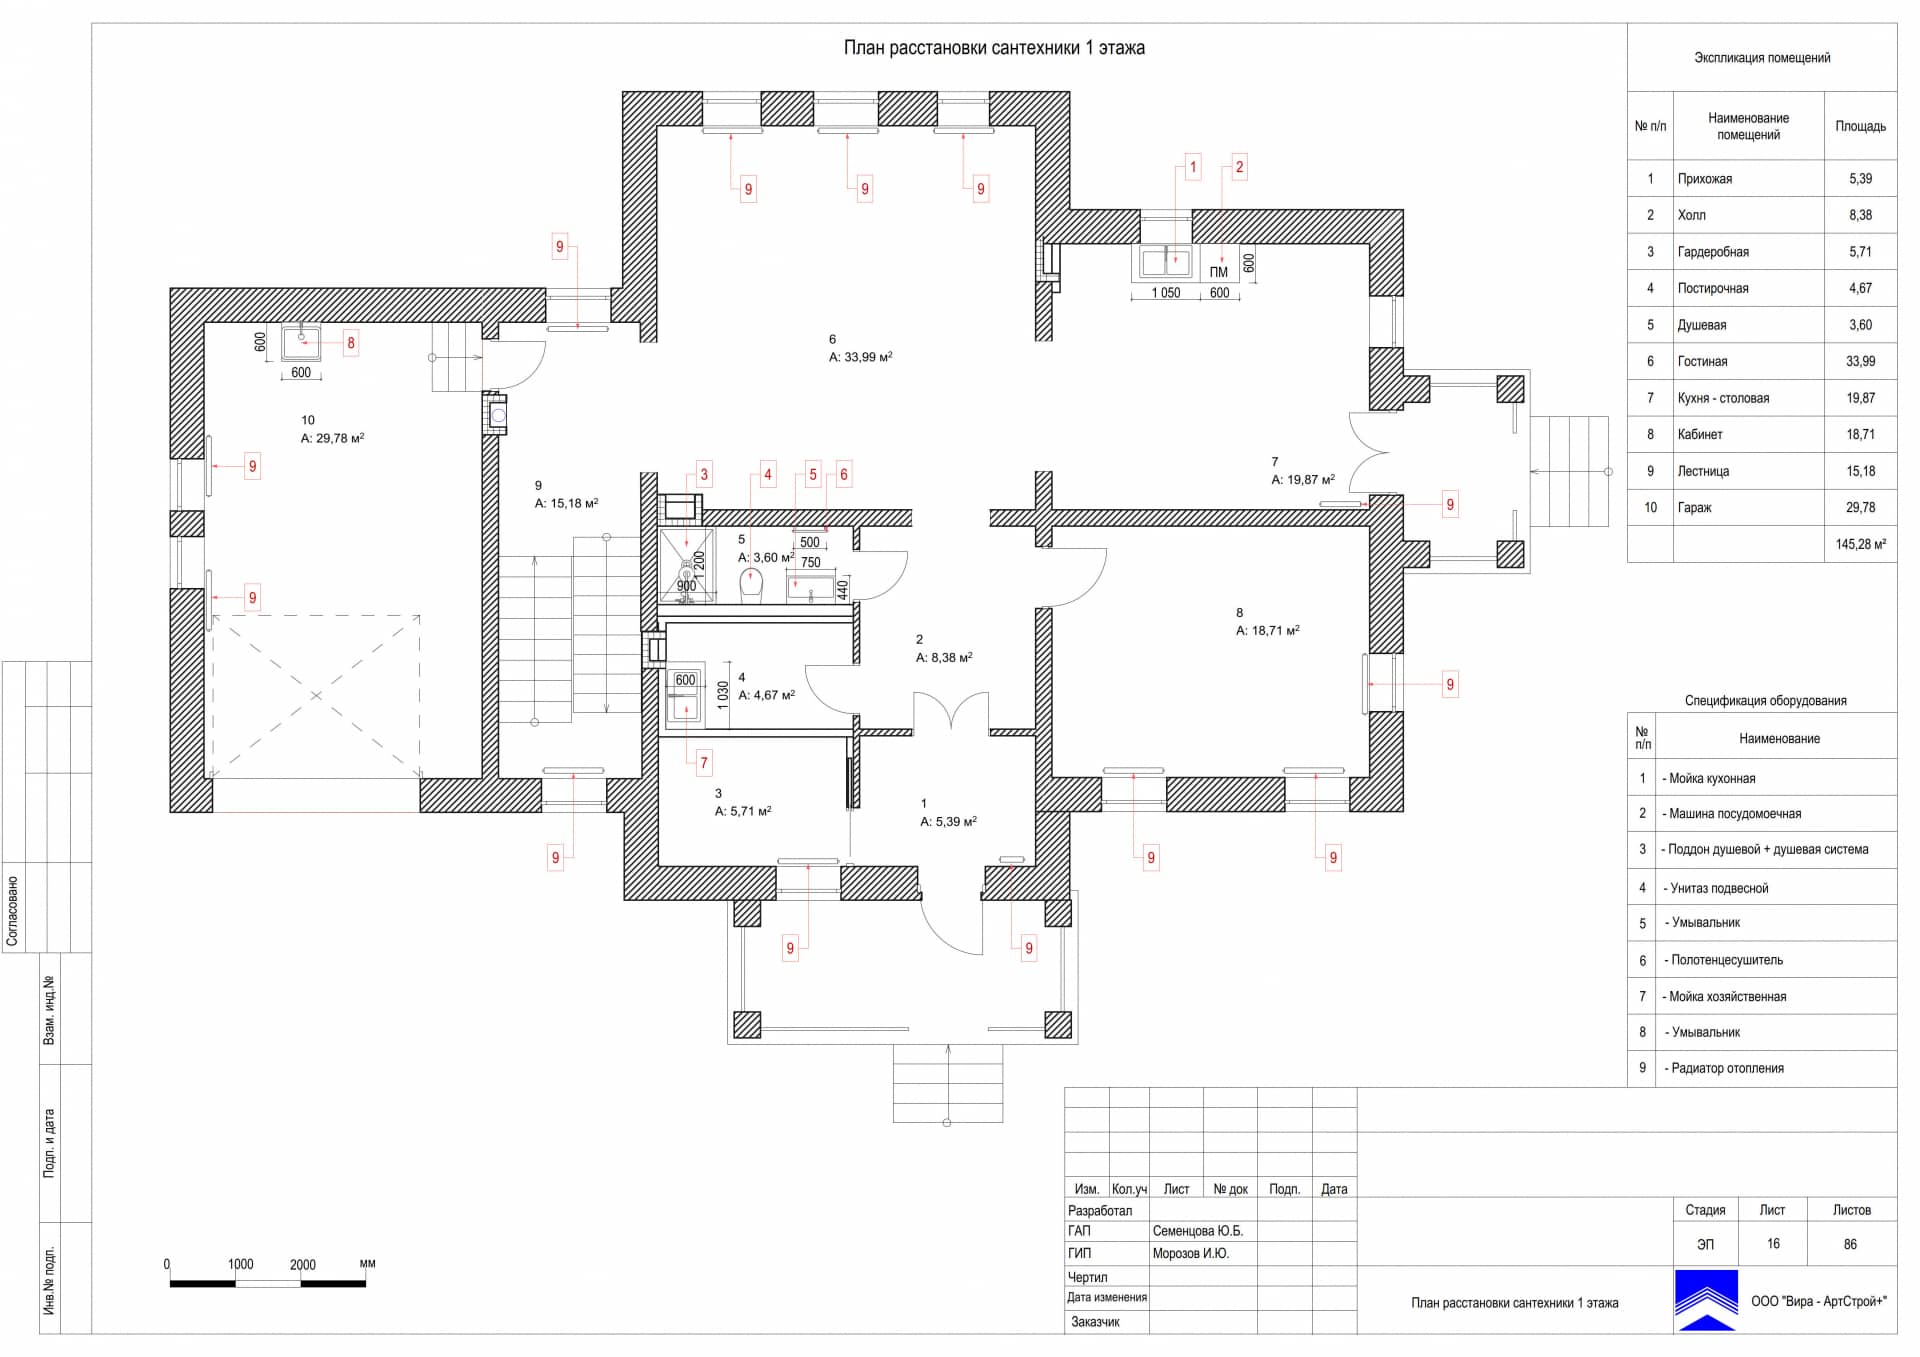 План расстановки сантехники 1 этажа, дом 471 м² в КП «Сорочаны»